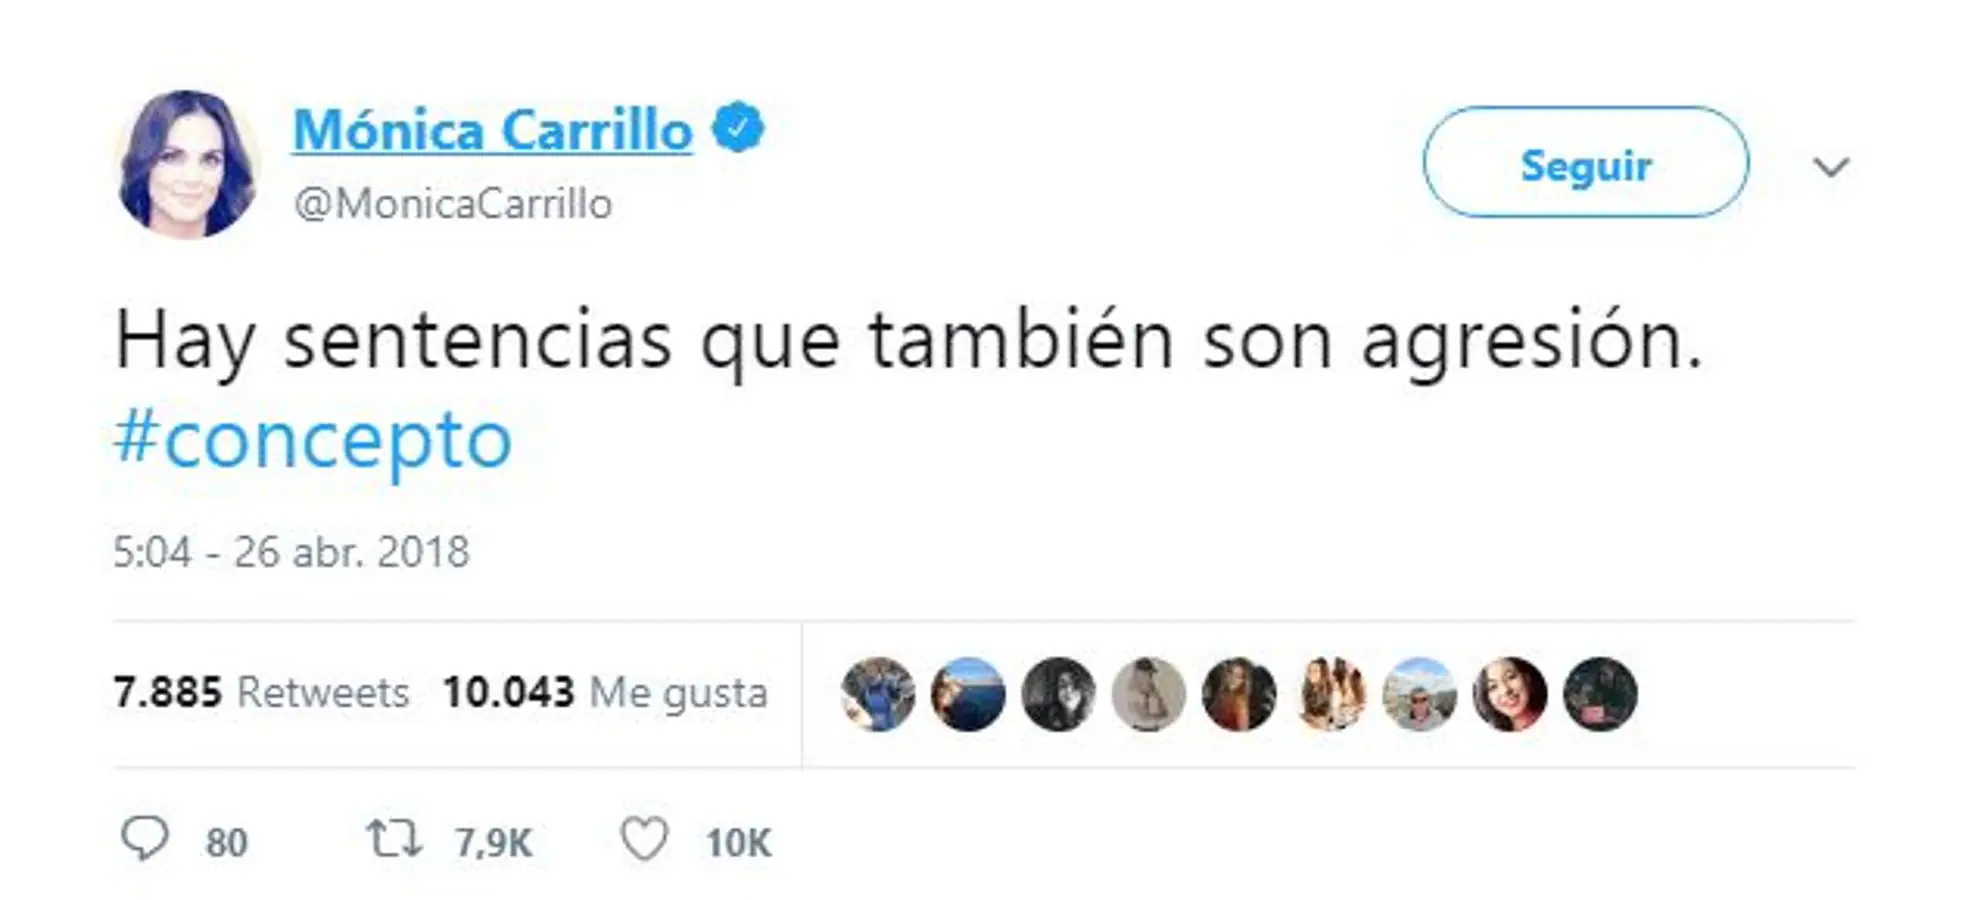 Mónica Carrillo. La presentadora de televisión muestra en un tuit su indignación a la sentencia